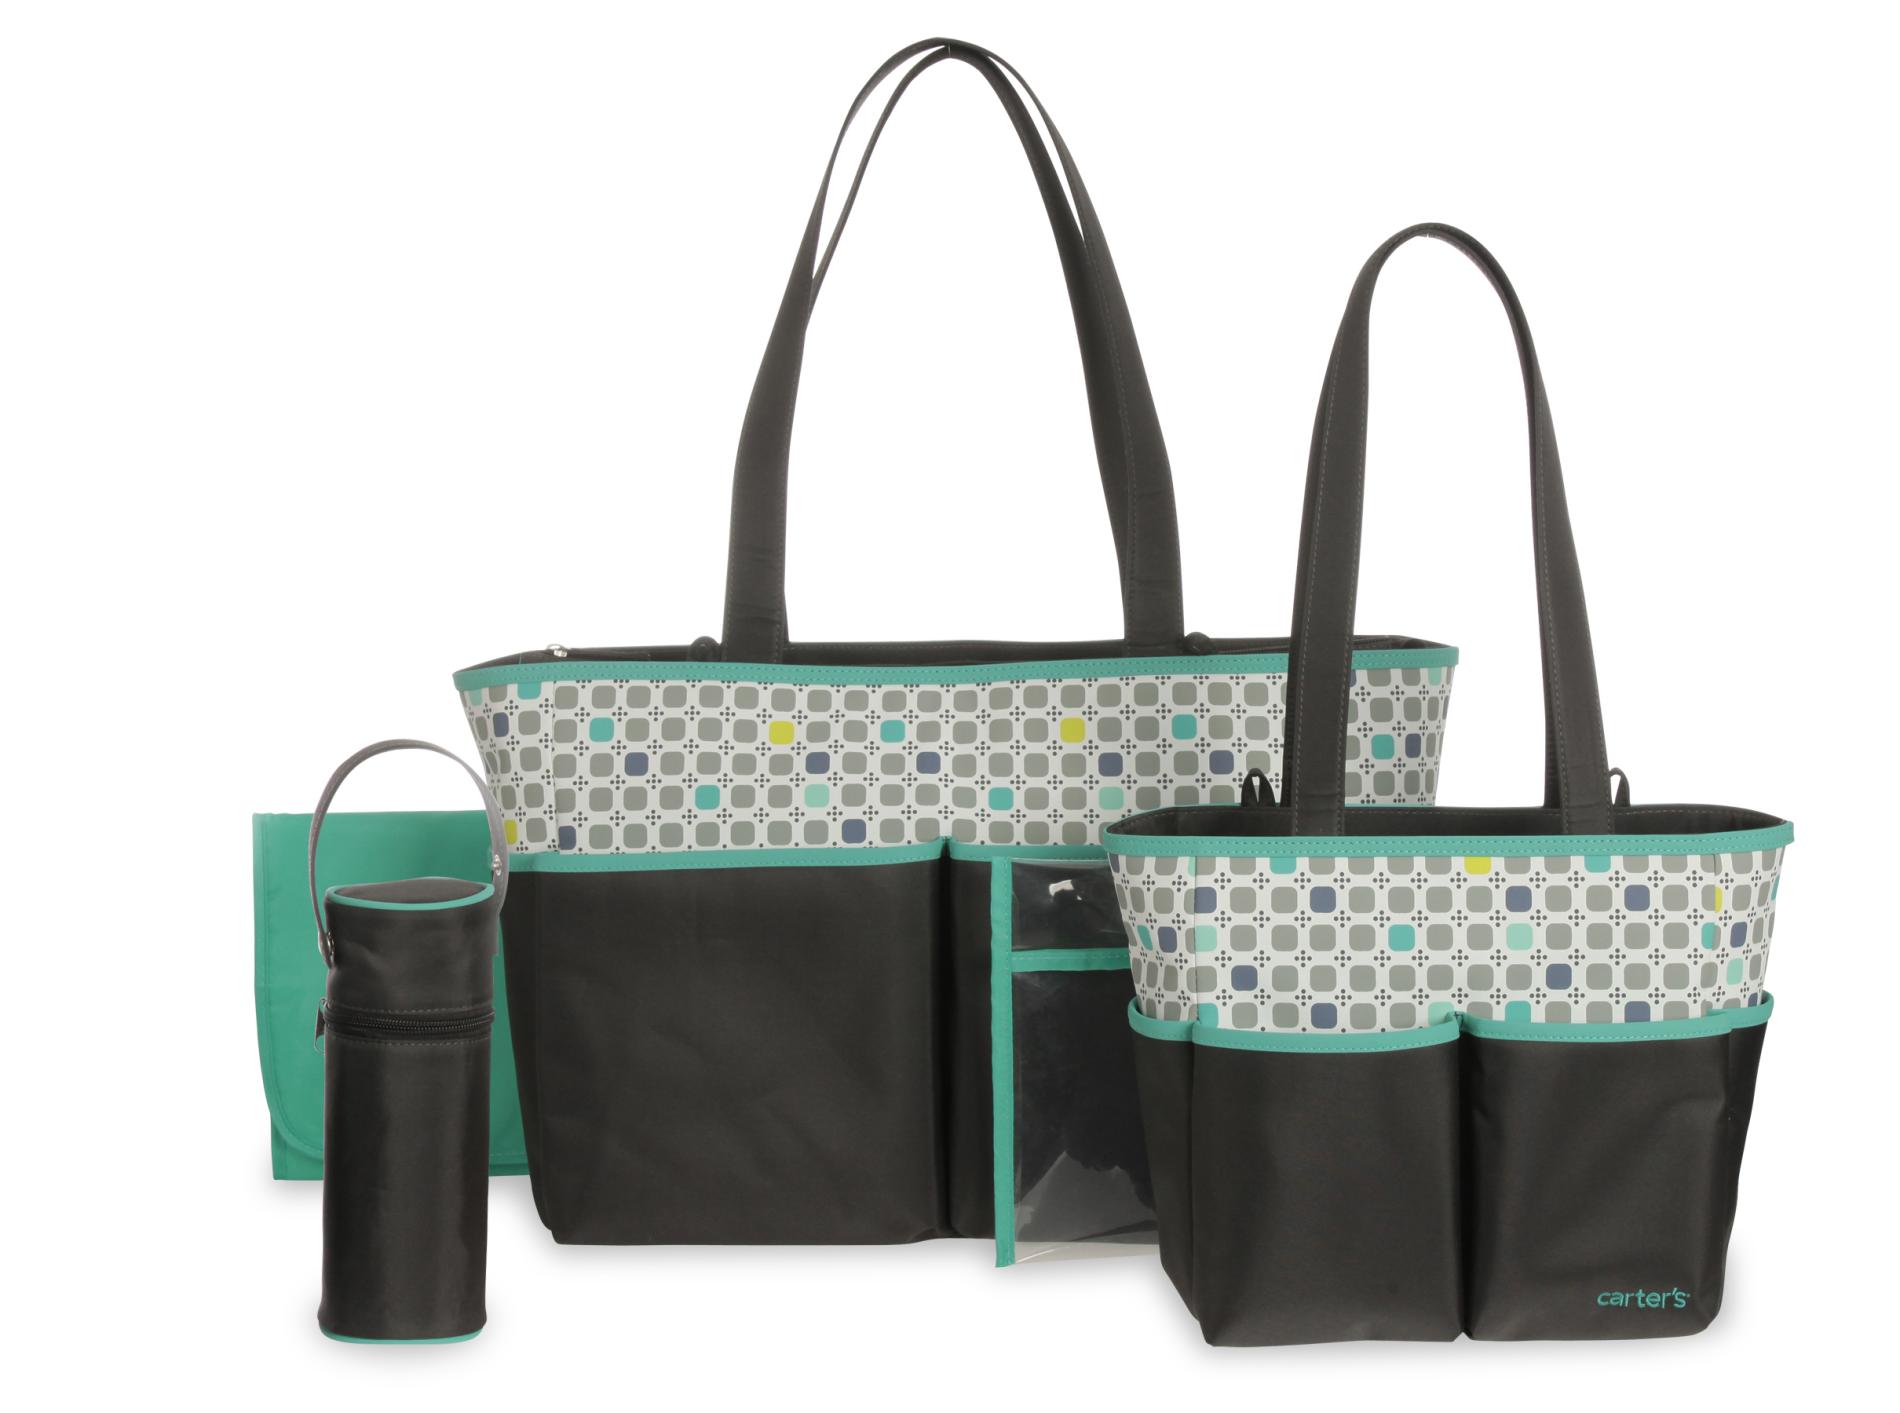 Carter’s® Infant Boy's 5Piece Diaper Bag Set Geometric Shop Your Way Online Shopping